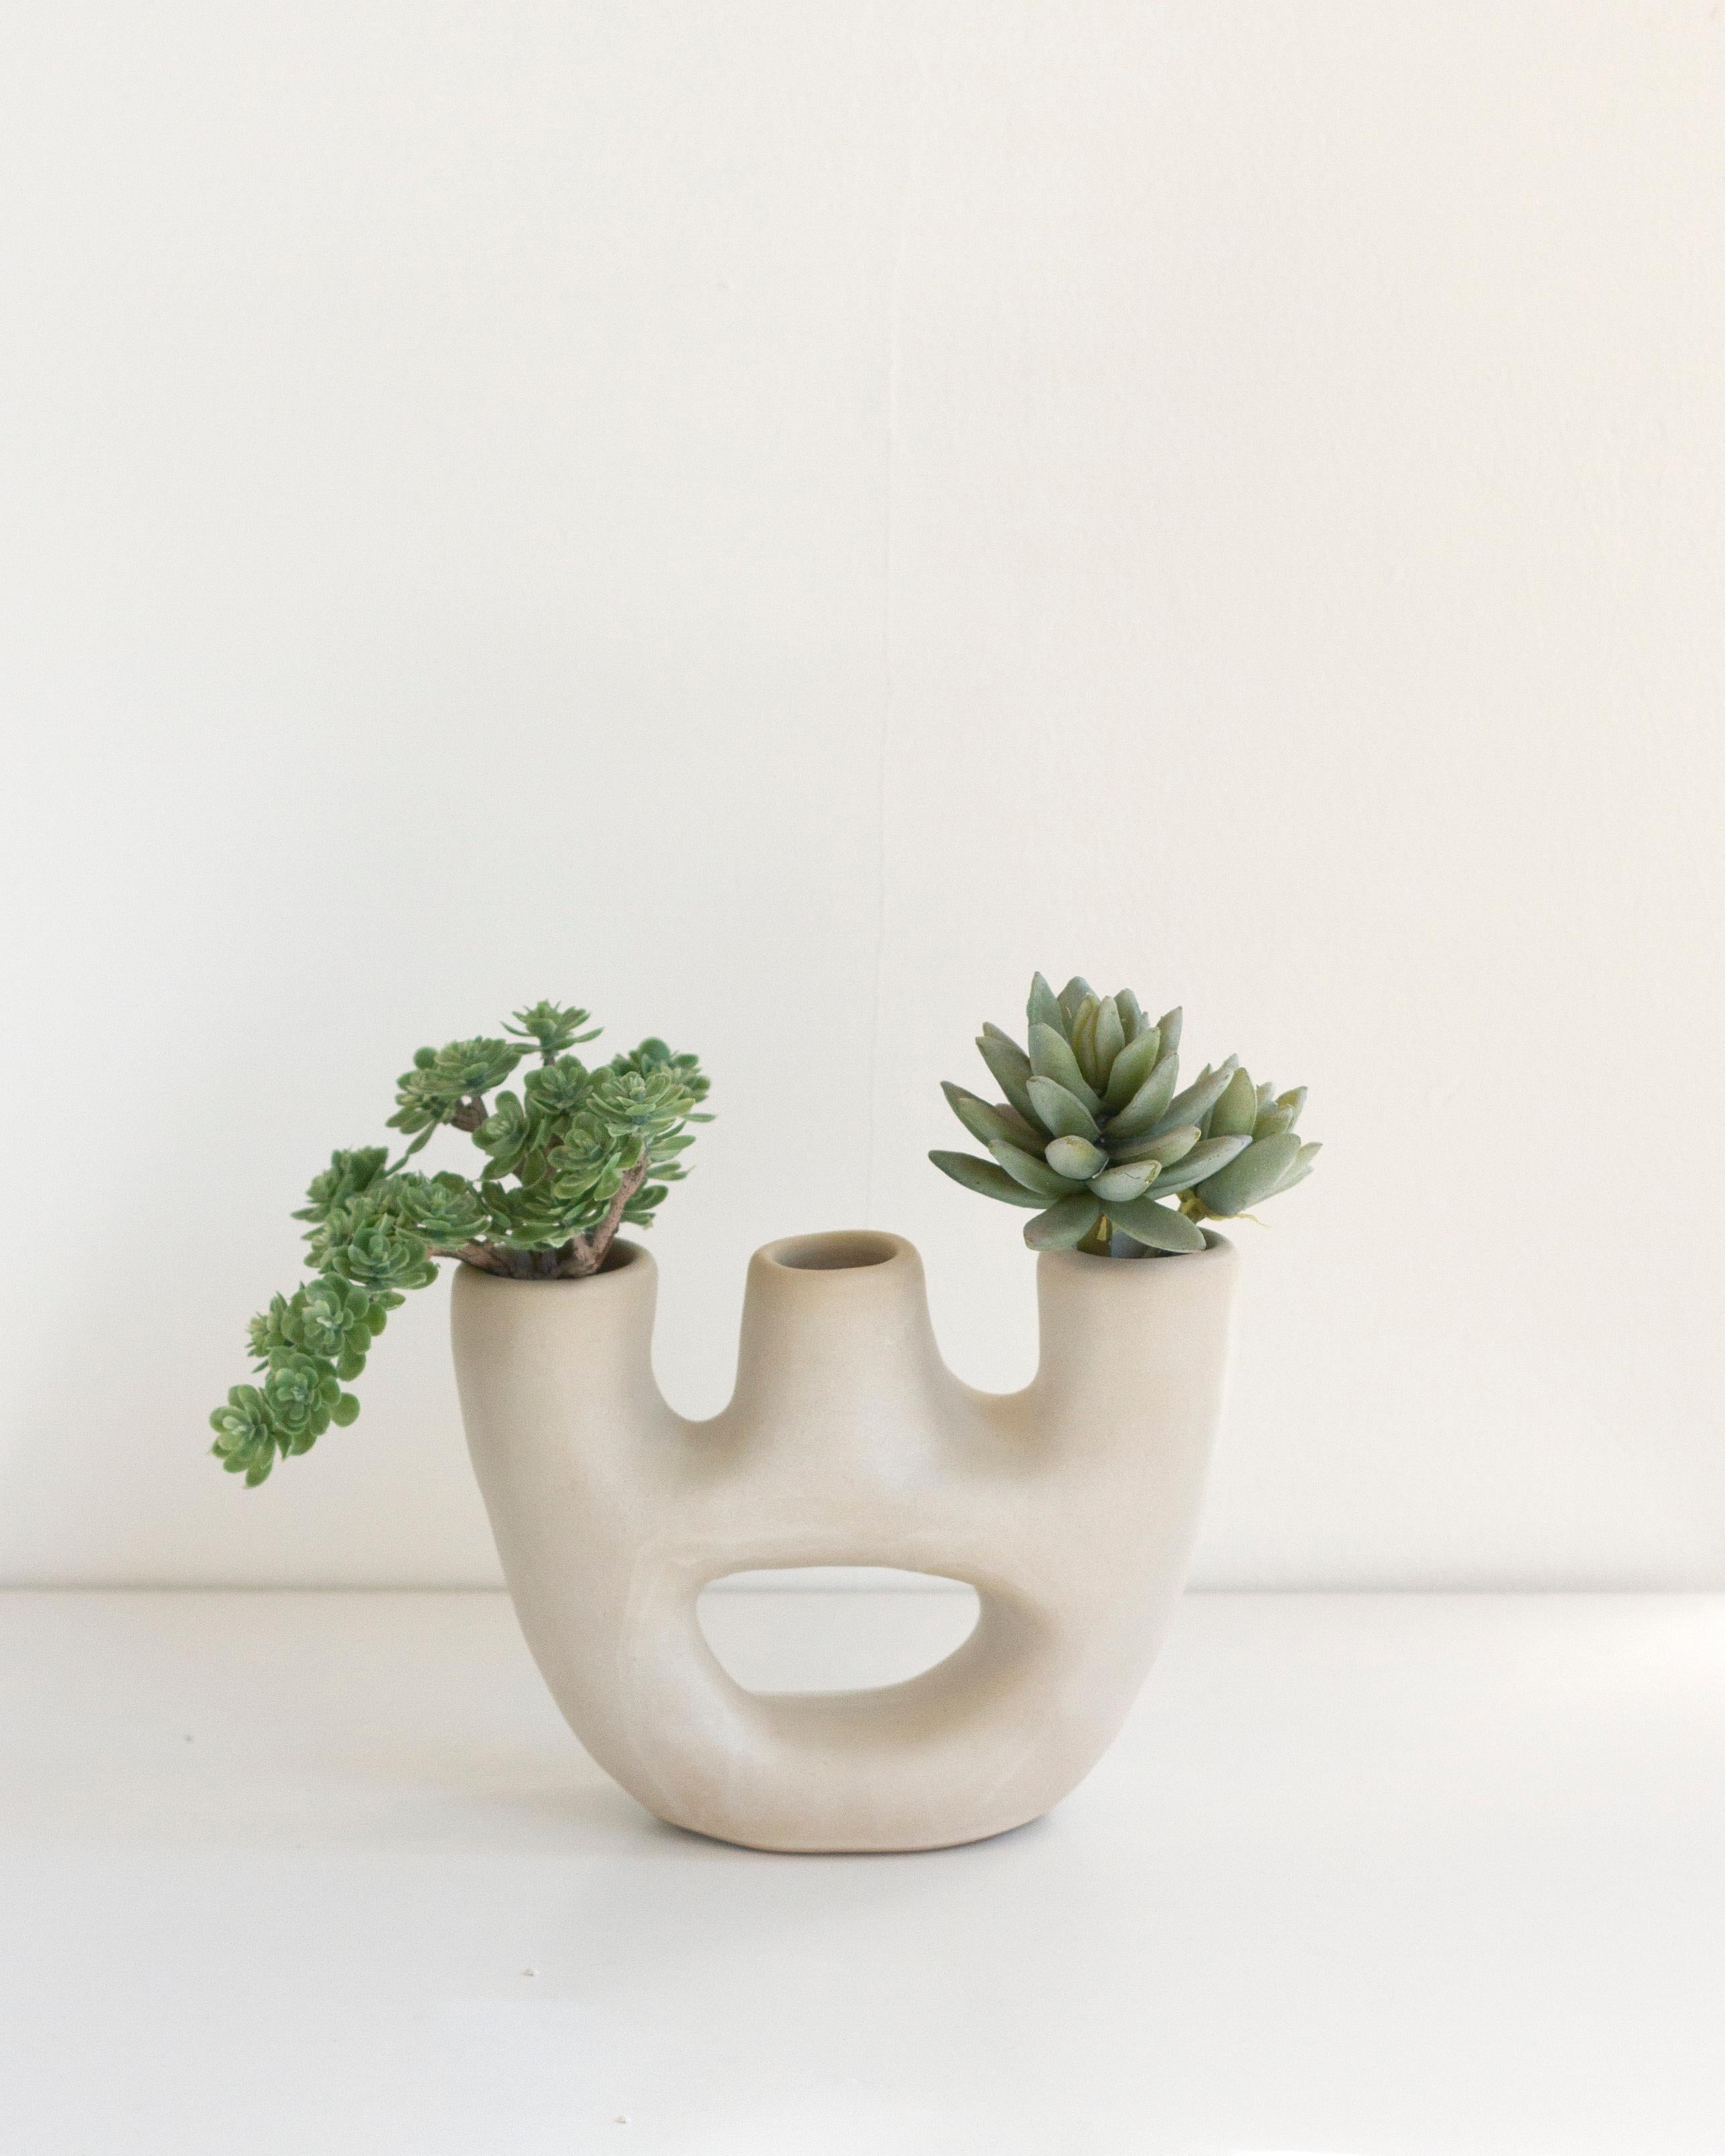 Diese minimalistische, handgefertigte Vase aus Ton eignet sich perfekt, um ein modernes, organisches Element in Ihr Heim zu bringen. Das Design dieser Vase ist von Kerzenhaltern inspiriert und hat drei Öffnungen, die ihr eine einzigartige Note